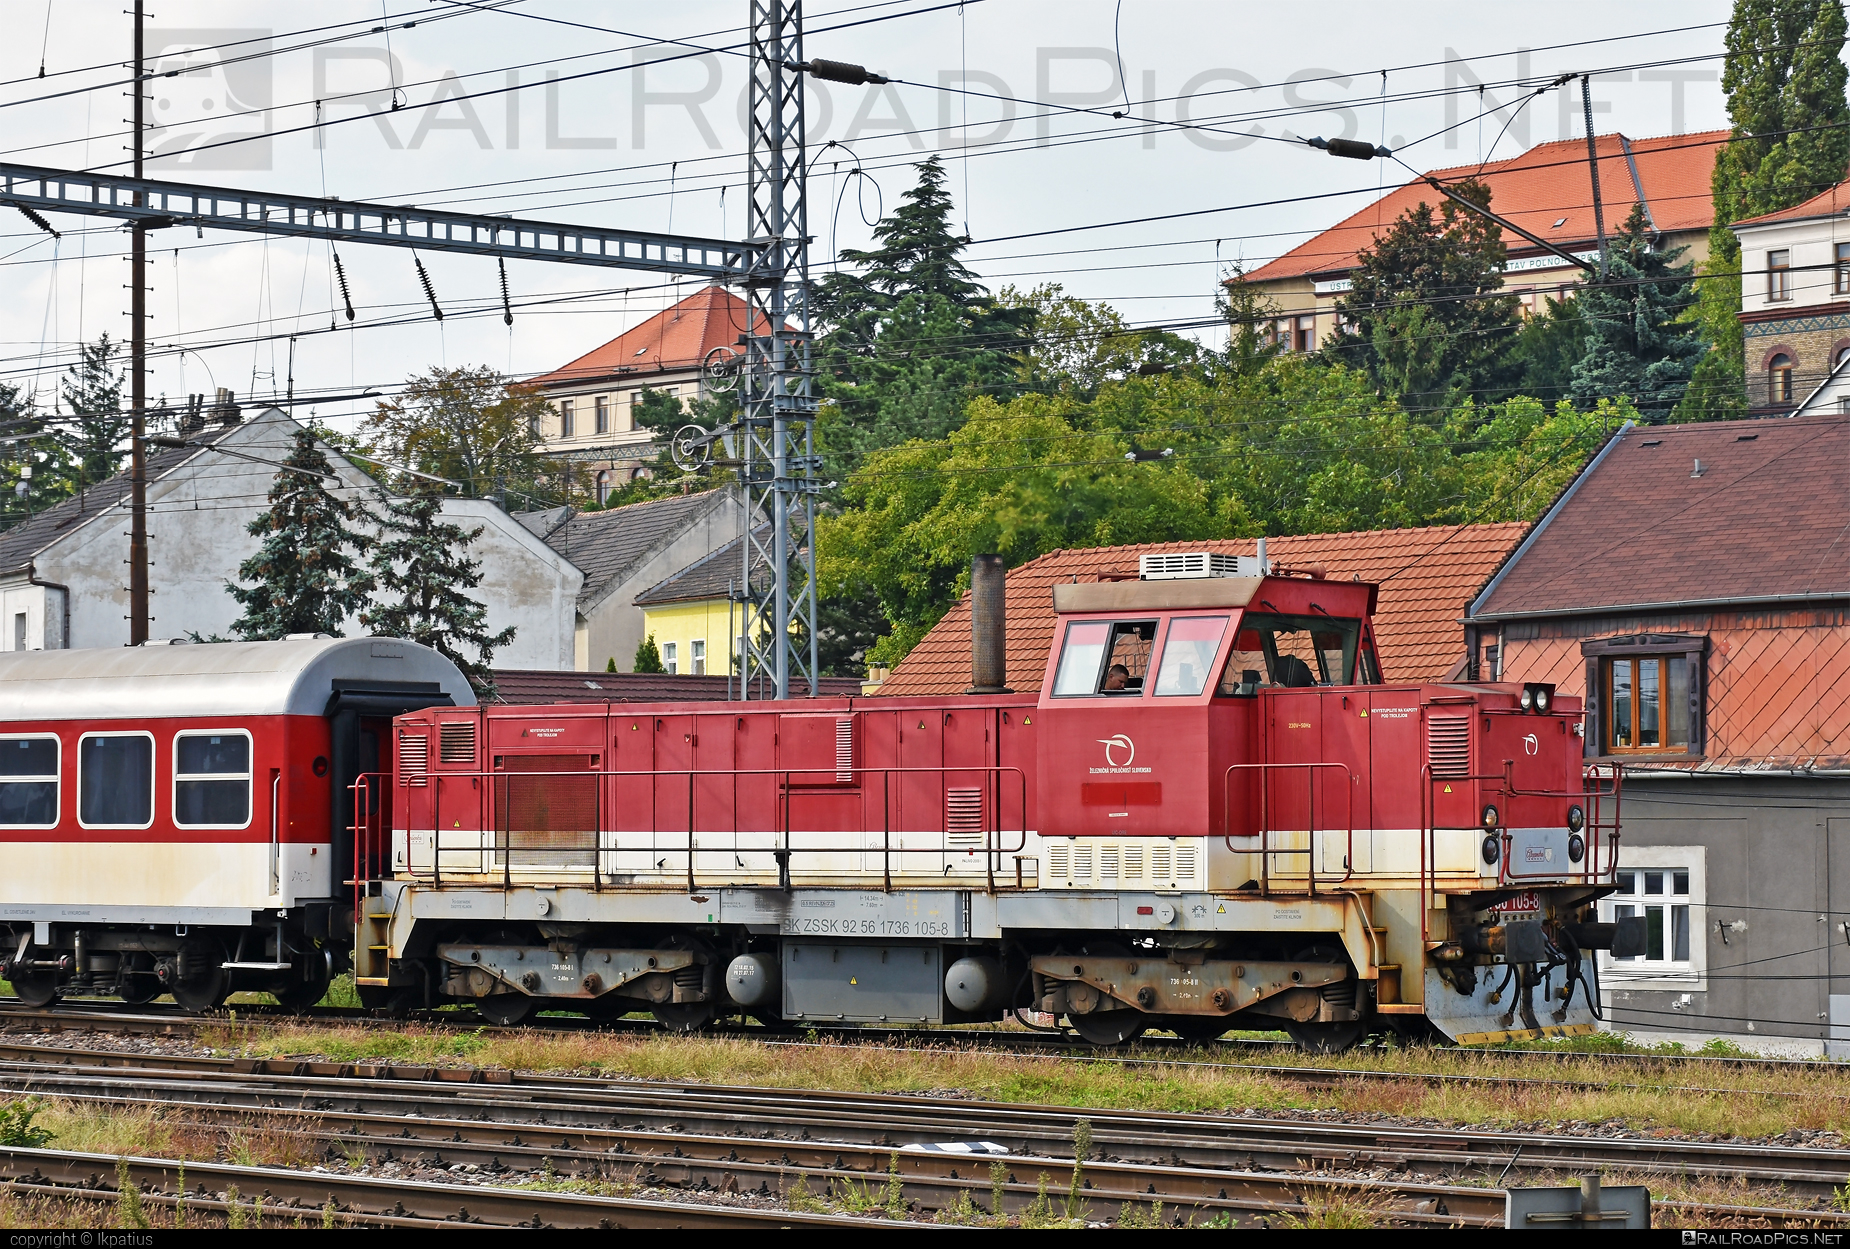 ŽOS Zvolen Class 736 - 736 105-8 operated by Železničná Spoločnost' Slovensko, a.s. #ZeleznicnaSpolocnostSlovensko #locomotive736 #zoszvolen #zoszvolen736 #zssk